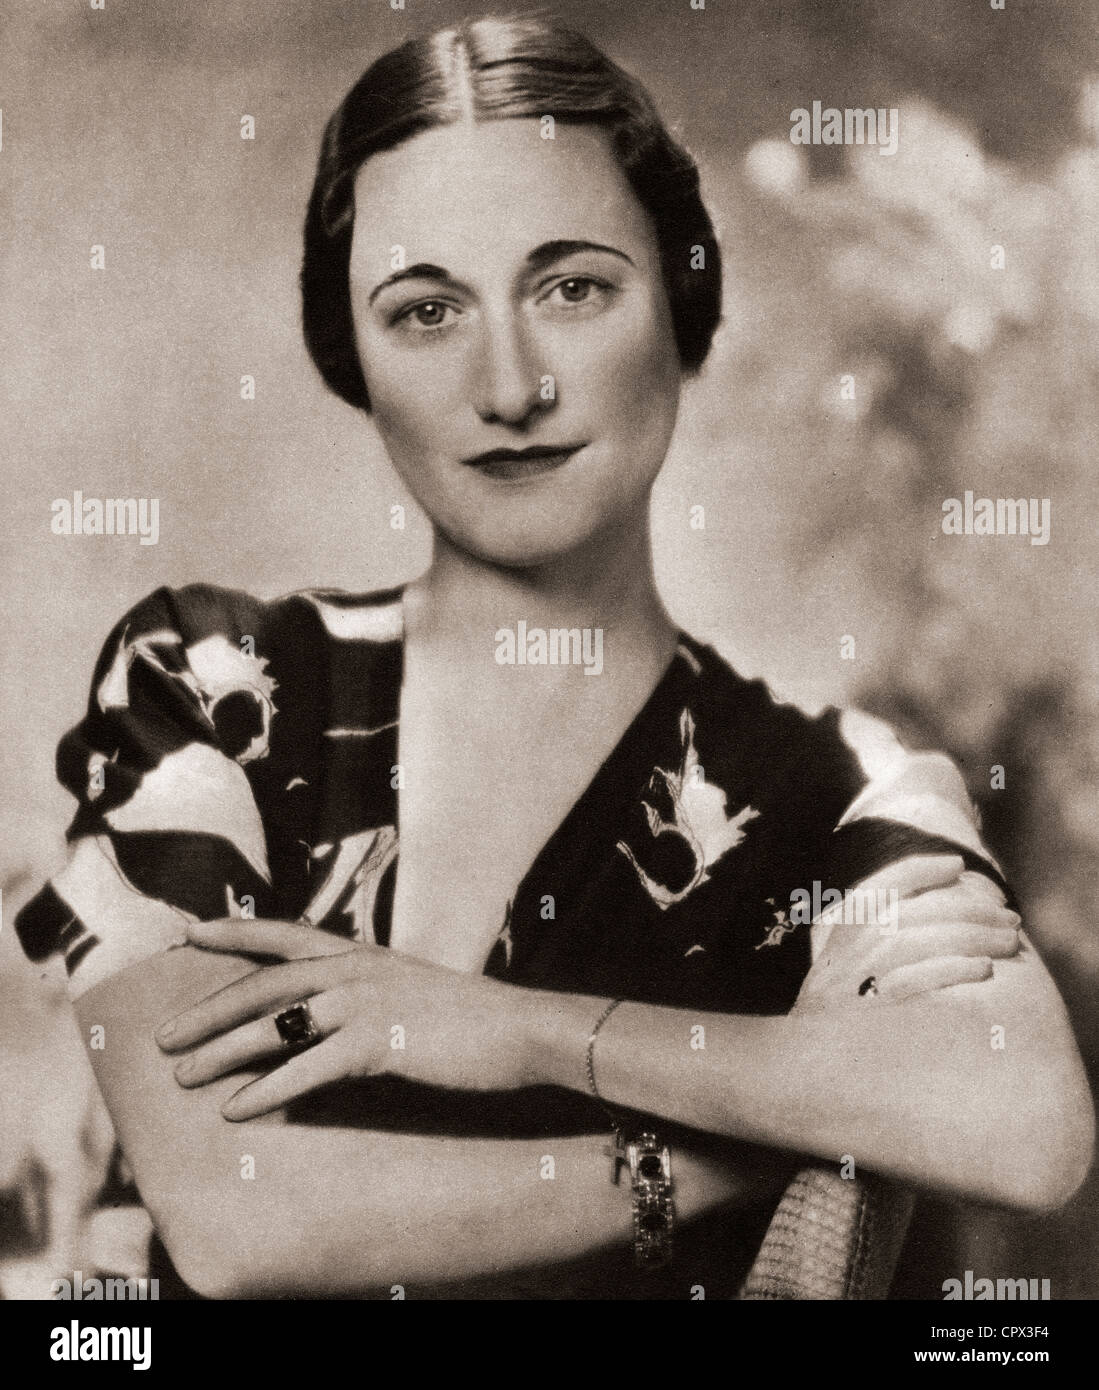 Wallis Simpson, plus tard, la Duchesse de Windsor, née Bessie Wallis Warfield, 1896 - 1986. Socialite américaine Banque D'Images